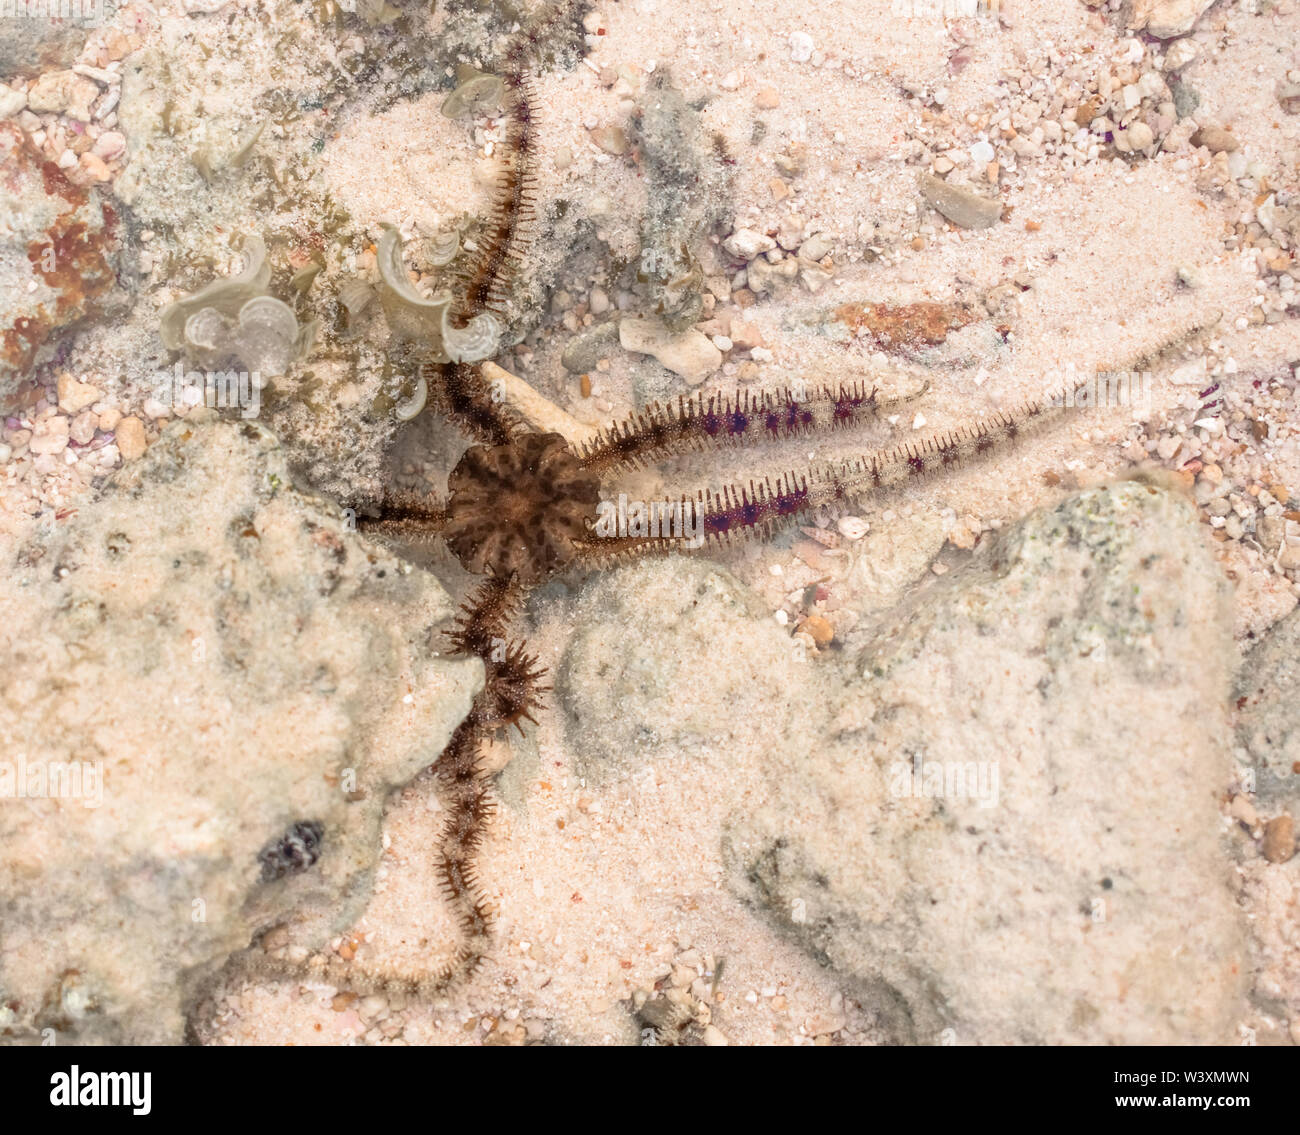 Wissenschaftliche ID: Ophiocoma echinata (Stacheligen ophiocoma). Foto Unterwasser der spröden Sea Star während der Fortbewegung in seinem natürlichen Lebensraum. Stockfoto